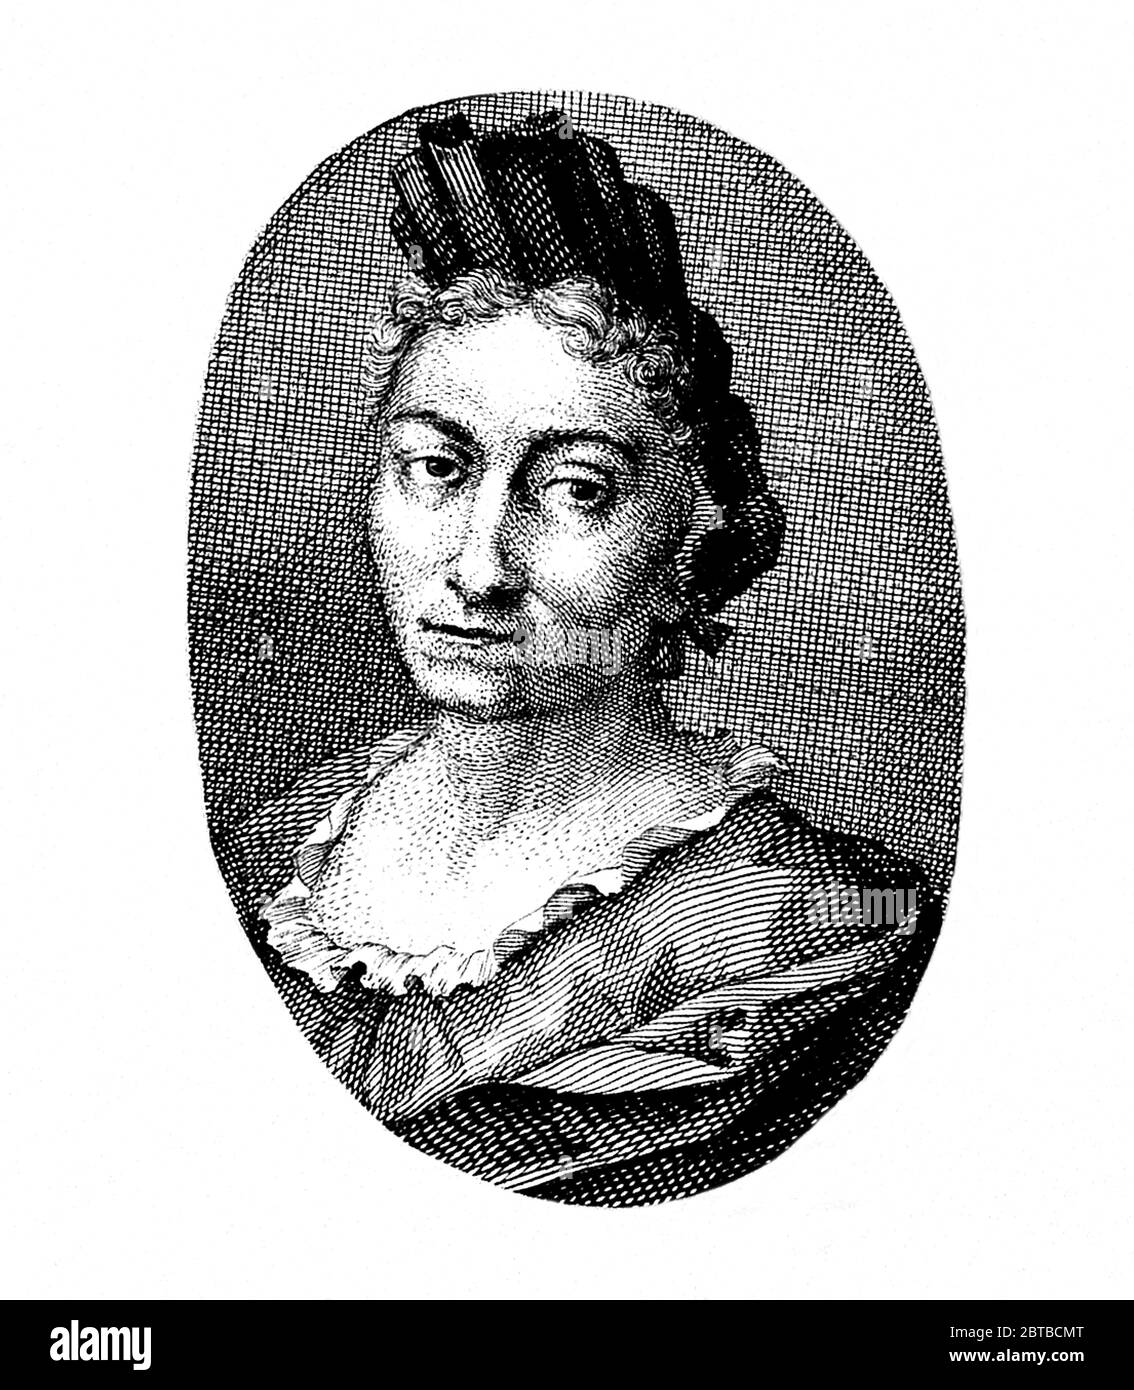 1700 c, ALLEMAGNE : la femme naturaliste allemande peintre , illustratrice scientifique et biologiste MARIA SIBYLLA MERIAN ( 1647 - 1717 ). Le père de Sybylla était le graveur et pubbliher suisse Mattäus Merian ( Matthew , 1593 - 1650 ) l'aîné . Portrait par graveur inconnu . - SYBILLA - HISTOIRE - foto storica storiche - portrait - ritratto - NATURALISTA - NATURALISTE - SCIENZA - SCIENCE - BIOLOGIE - BIOLOGIA - illustratrice - illustrateur - femme peintre - pittrice - pittura - peinture - ARTE - ARTS - ART - illustration - illustrazione - Incisione - gravure --- Archivio GBB Banque D'Images